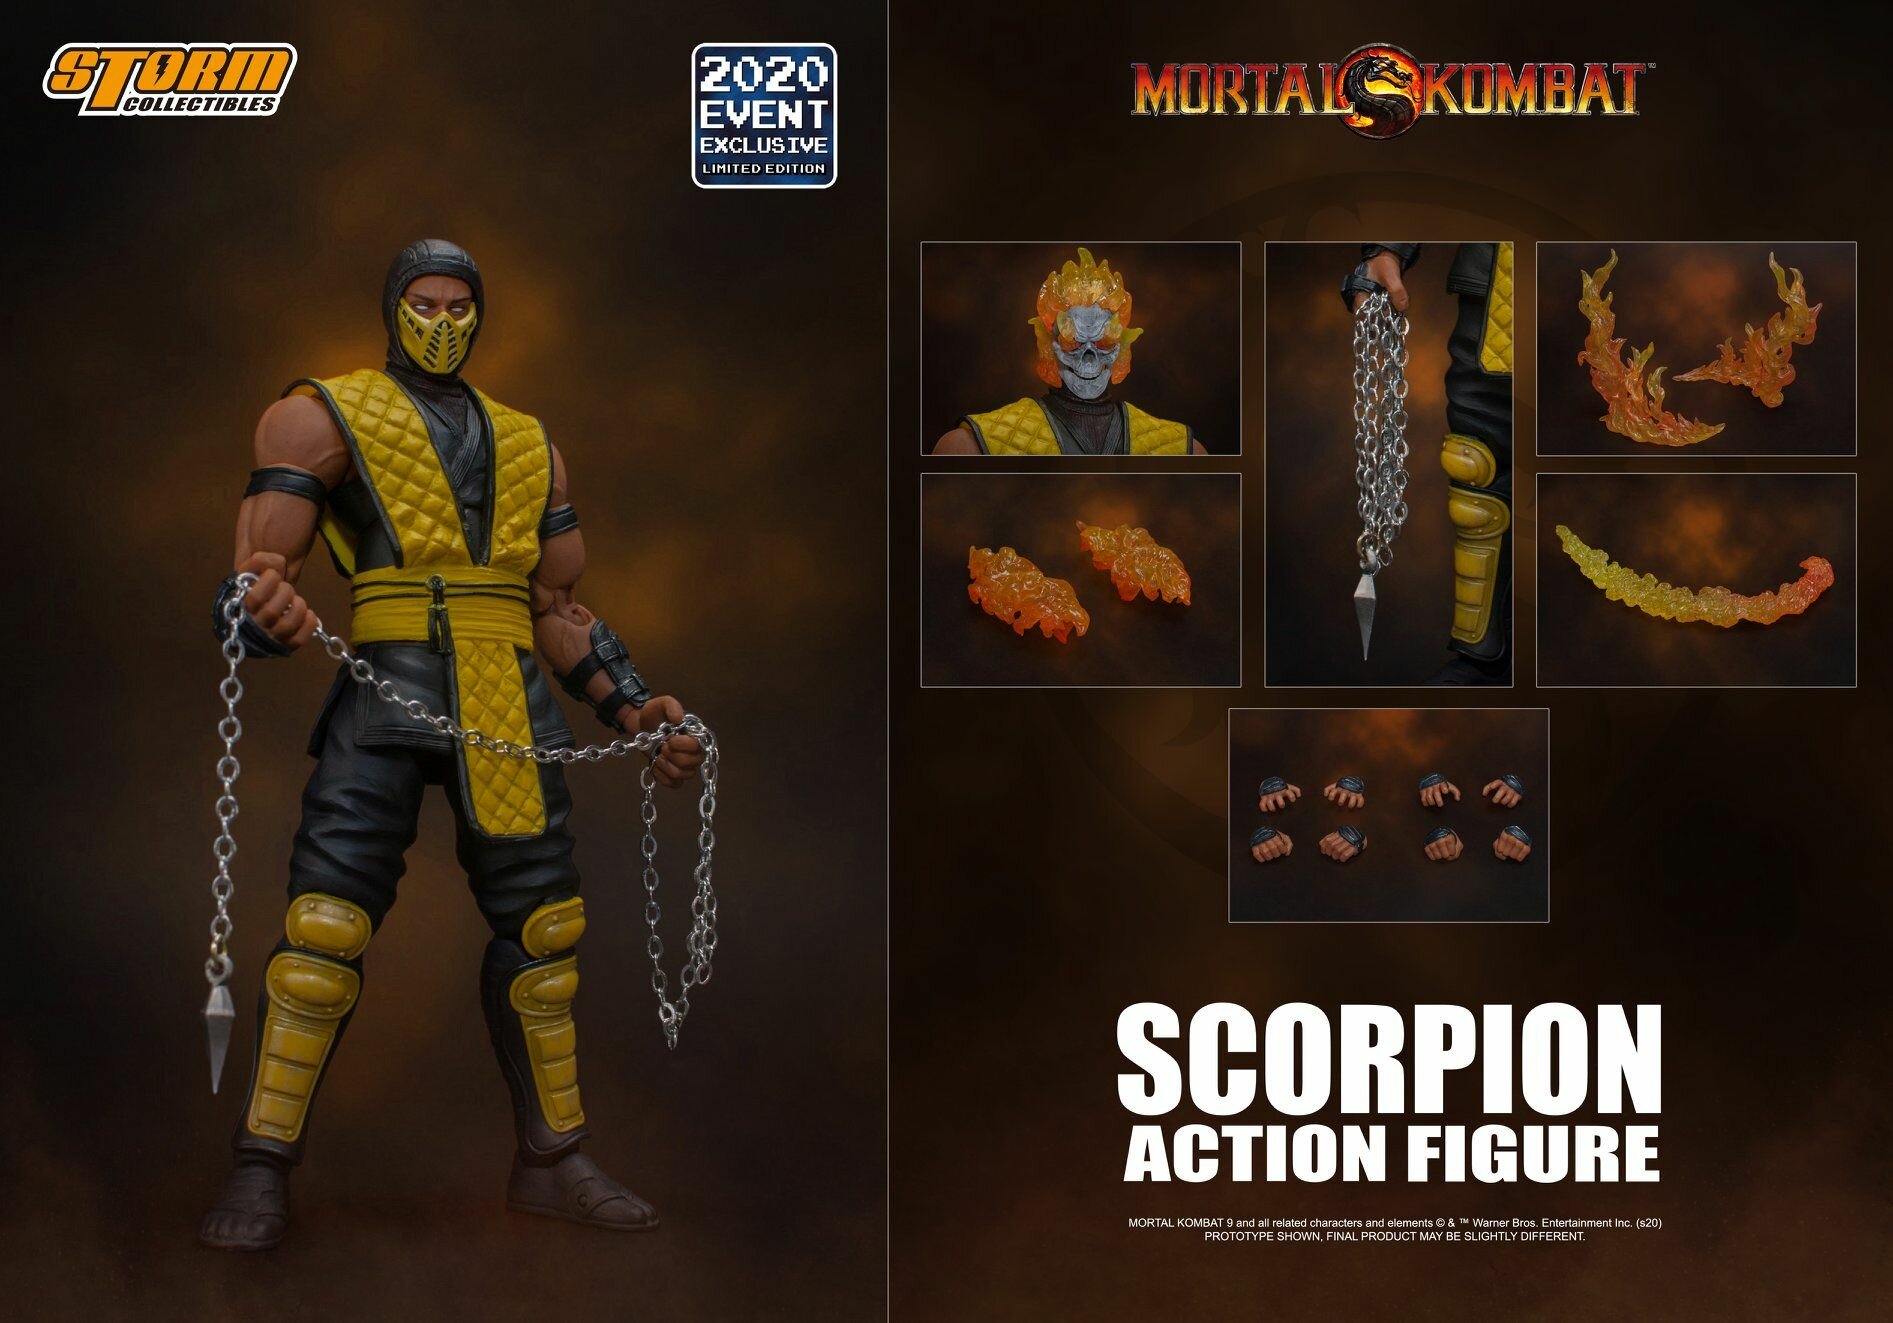 Фигурка Скорпион Эксклюзив 2020 (Ограниченный выпуск) - Мортал Комбат. Scorpion 2020 Event Exclusive (Limited Edition) - Mortal Kombat. Storm Collectibles.